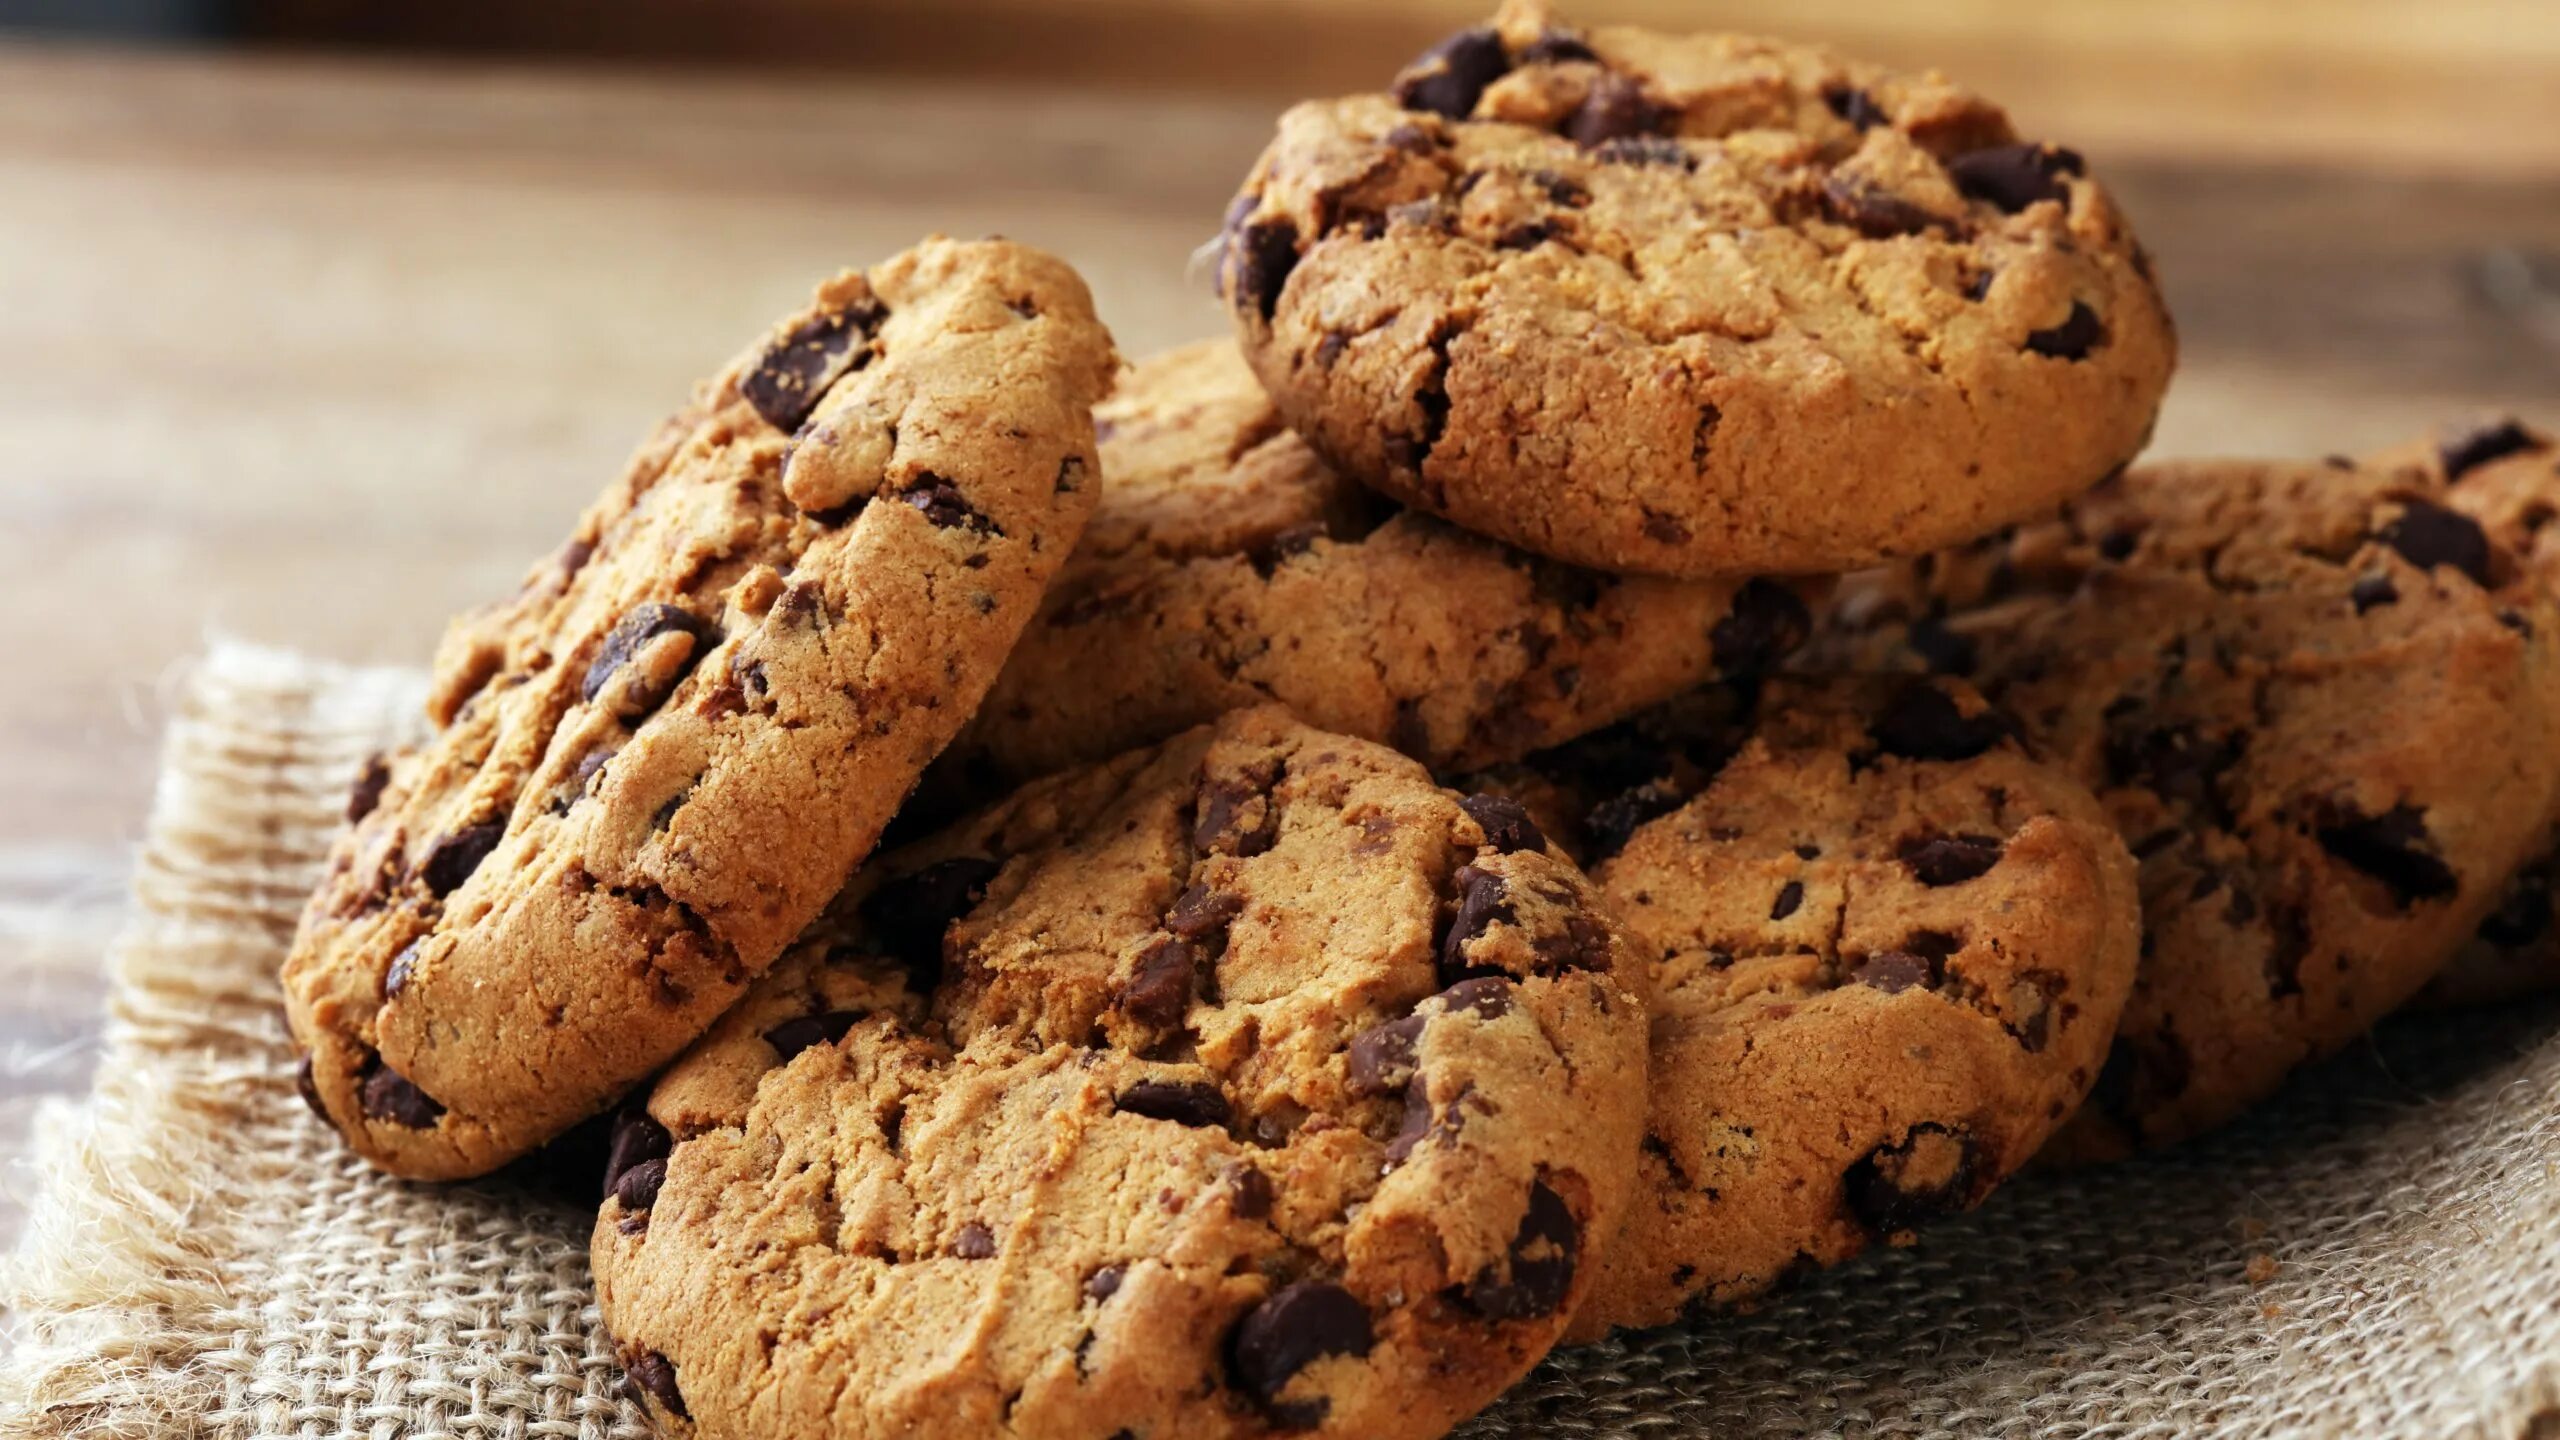 Content cookies. Печенье американо кукис. Кукис полевой. Печенье с шоколадом. Печенье кукис с шоколадом.